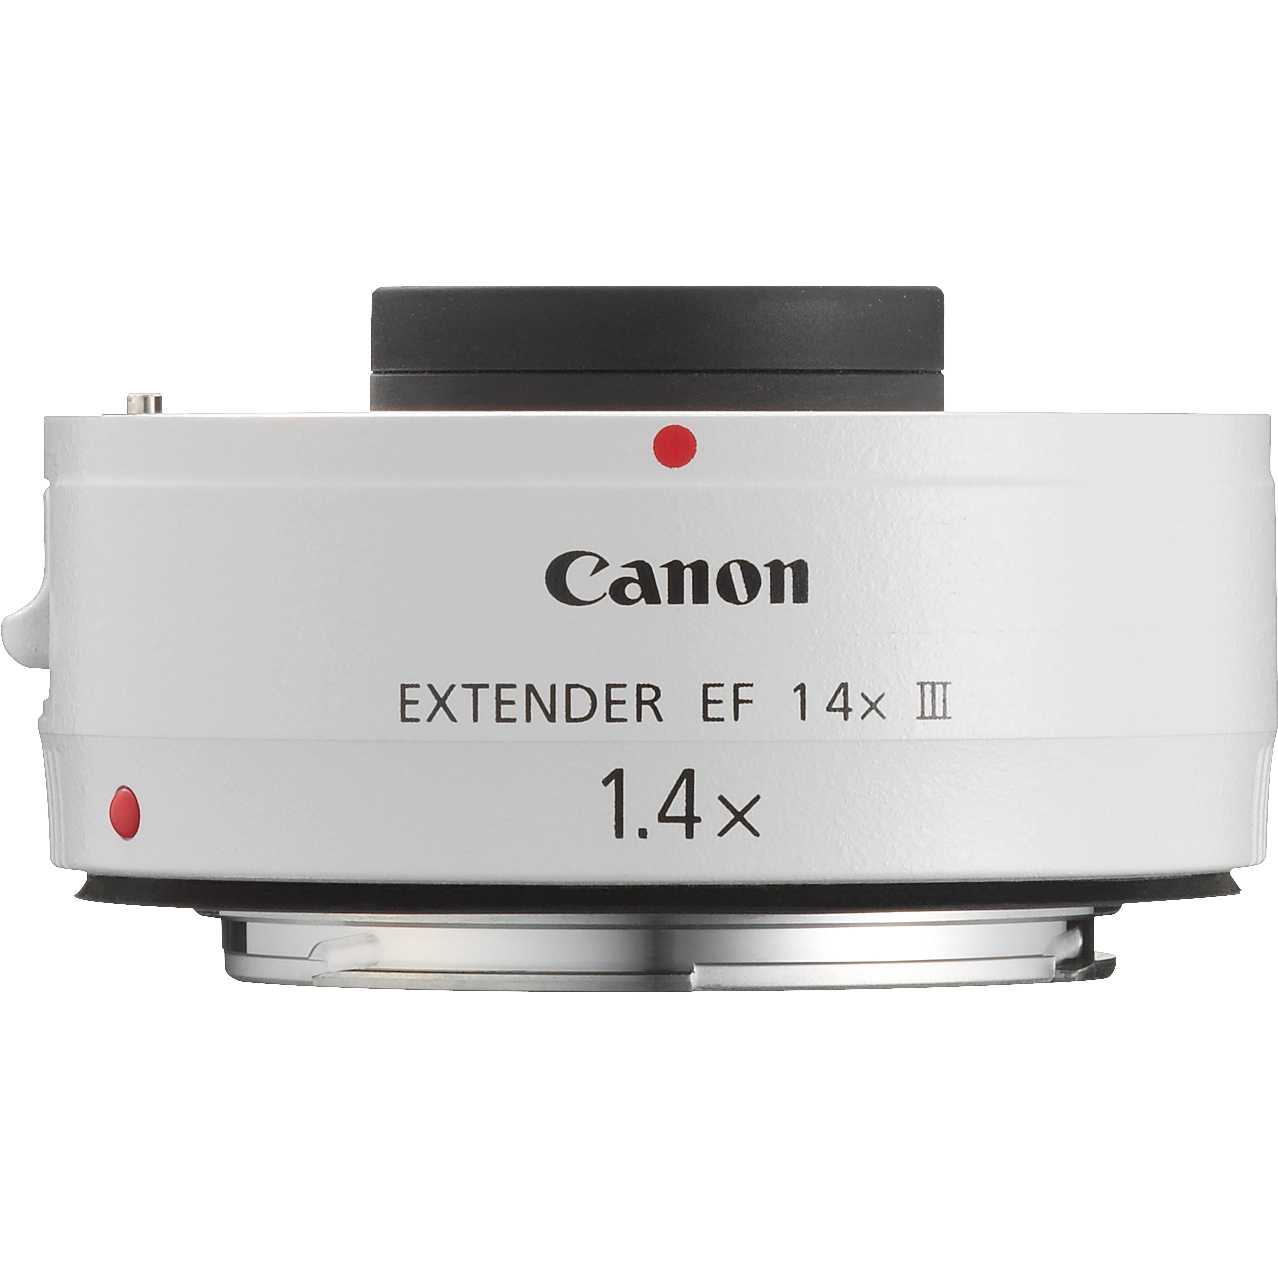 JA140116A2736【美品】Canon EXTENDER エクステンダー EF 1.4X III